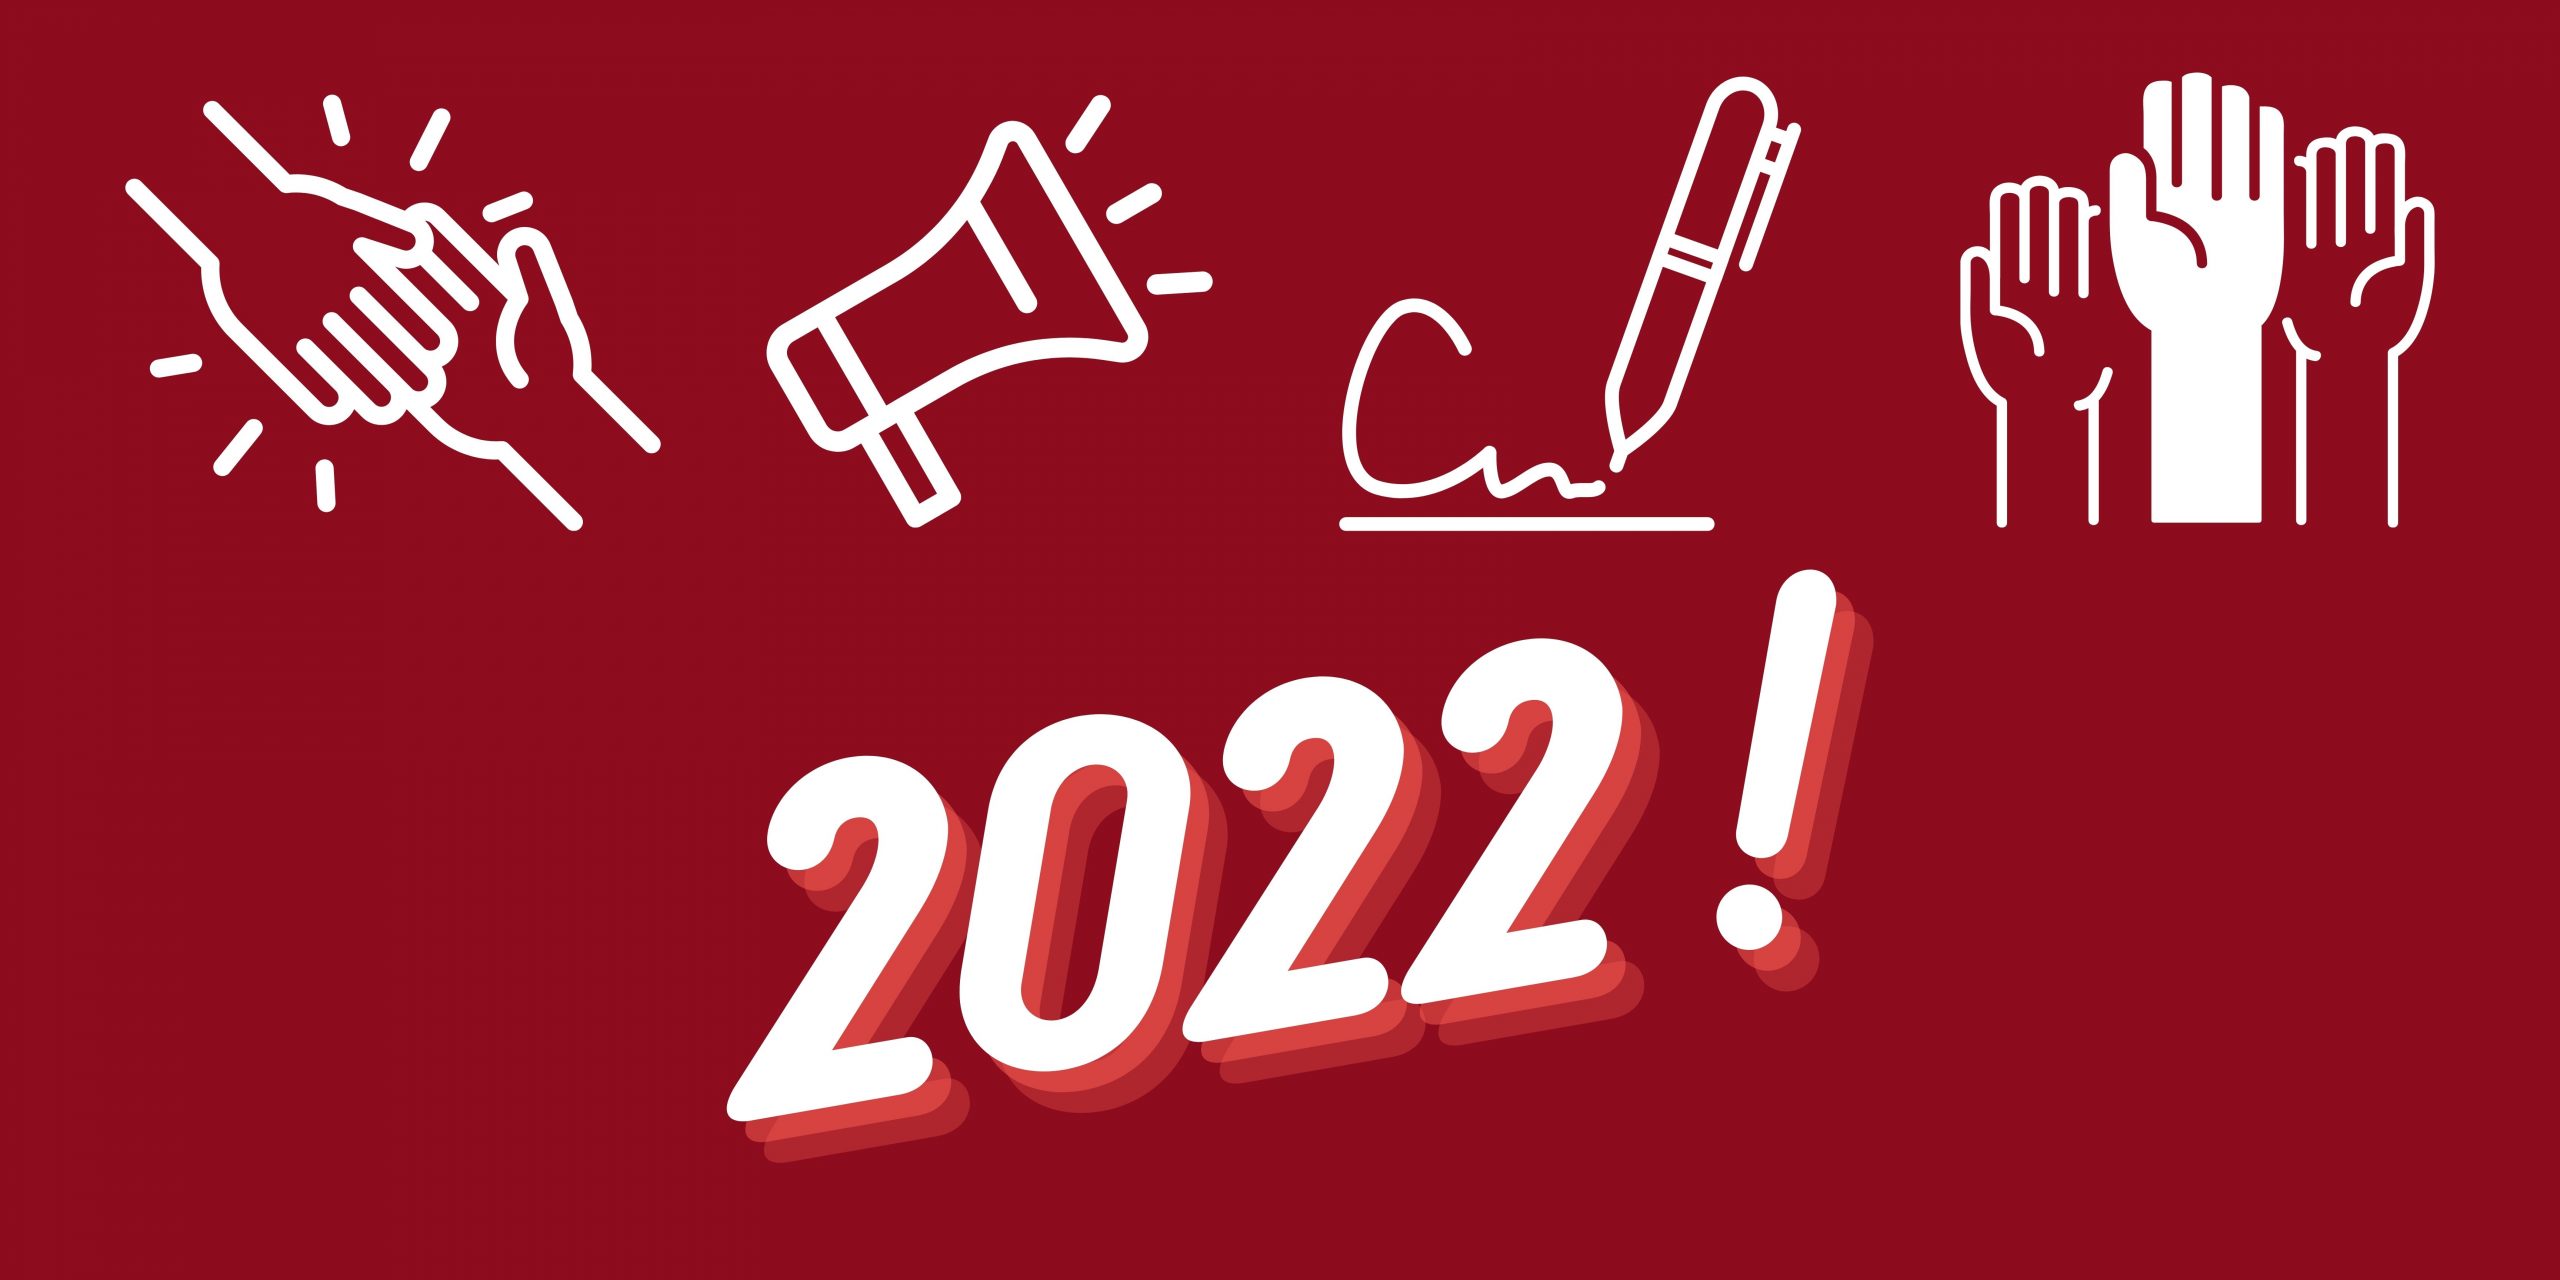 Droit Pluriel vous souhaite une excellente année 2022 !